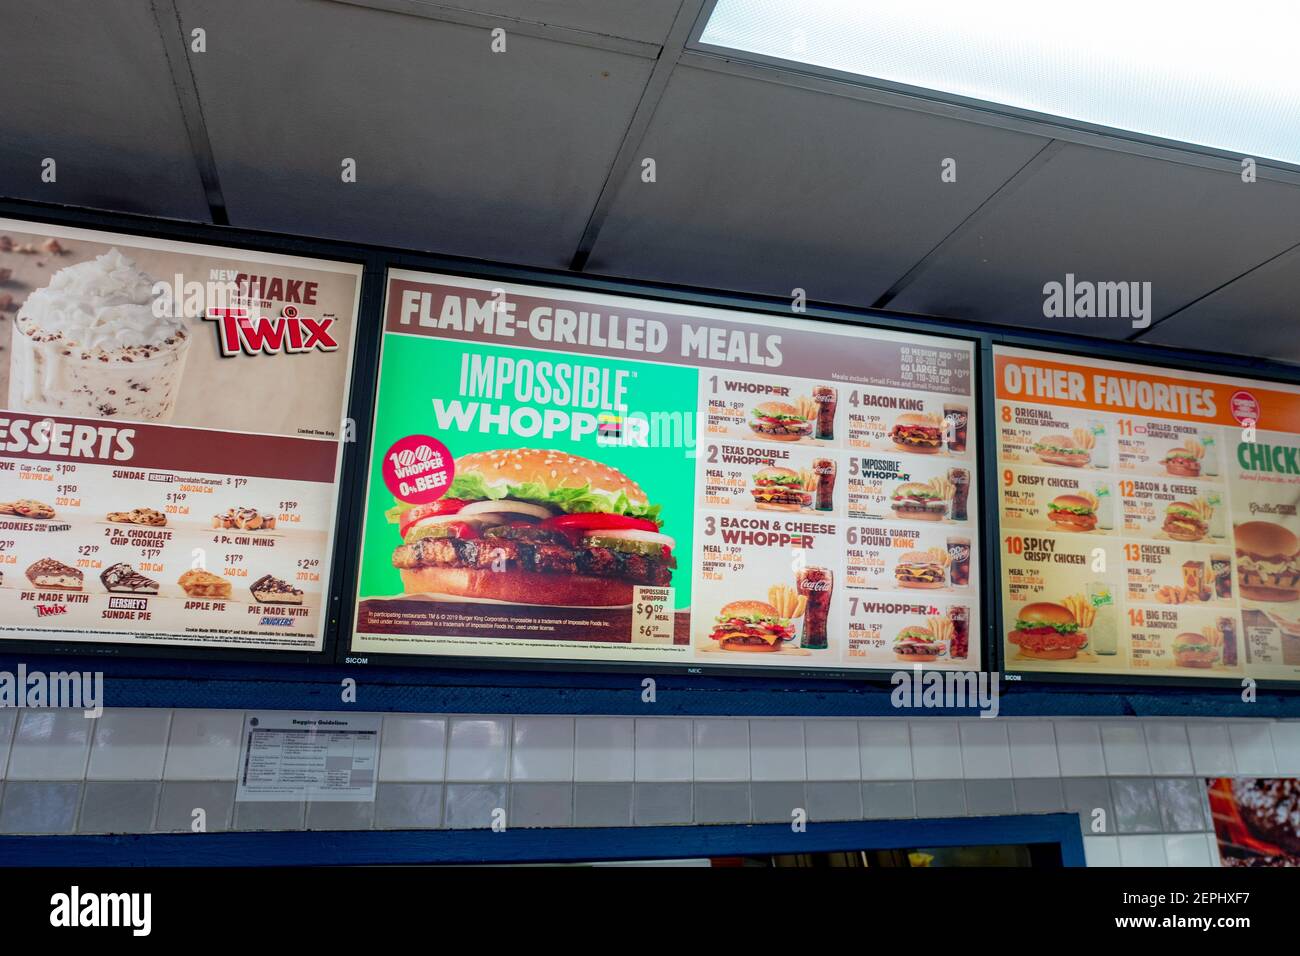 Primer plano del menú de Burger King con publicidad para Impossible  Whopper, utilizando una patente de hamburguesa con base de proteína vegetal  de la empresa de tecnología alimentaria Impossible, durante una prueba